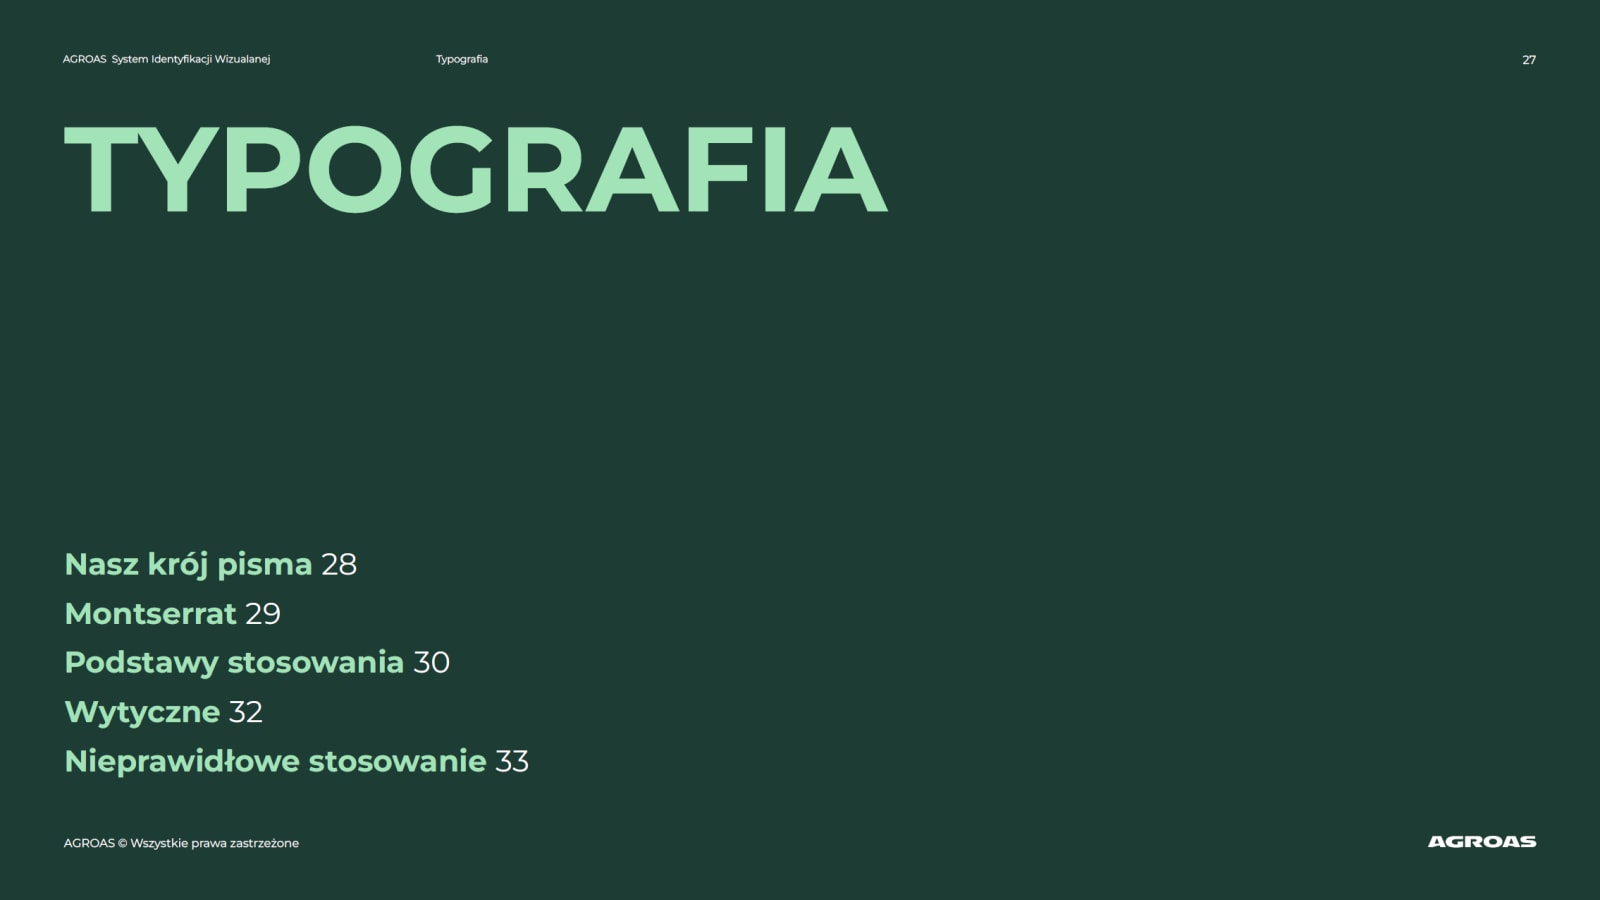 brandbook Agroas - spis typografia